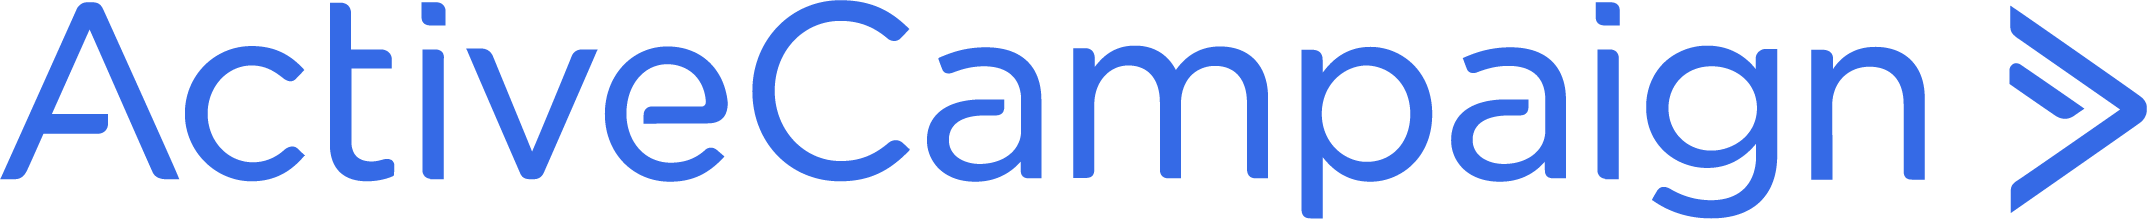 Active Campaign logo_blue